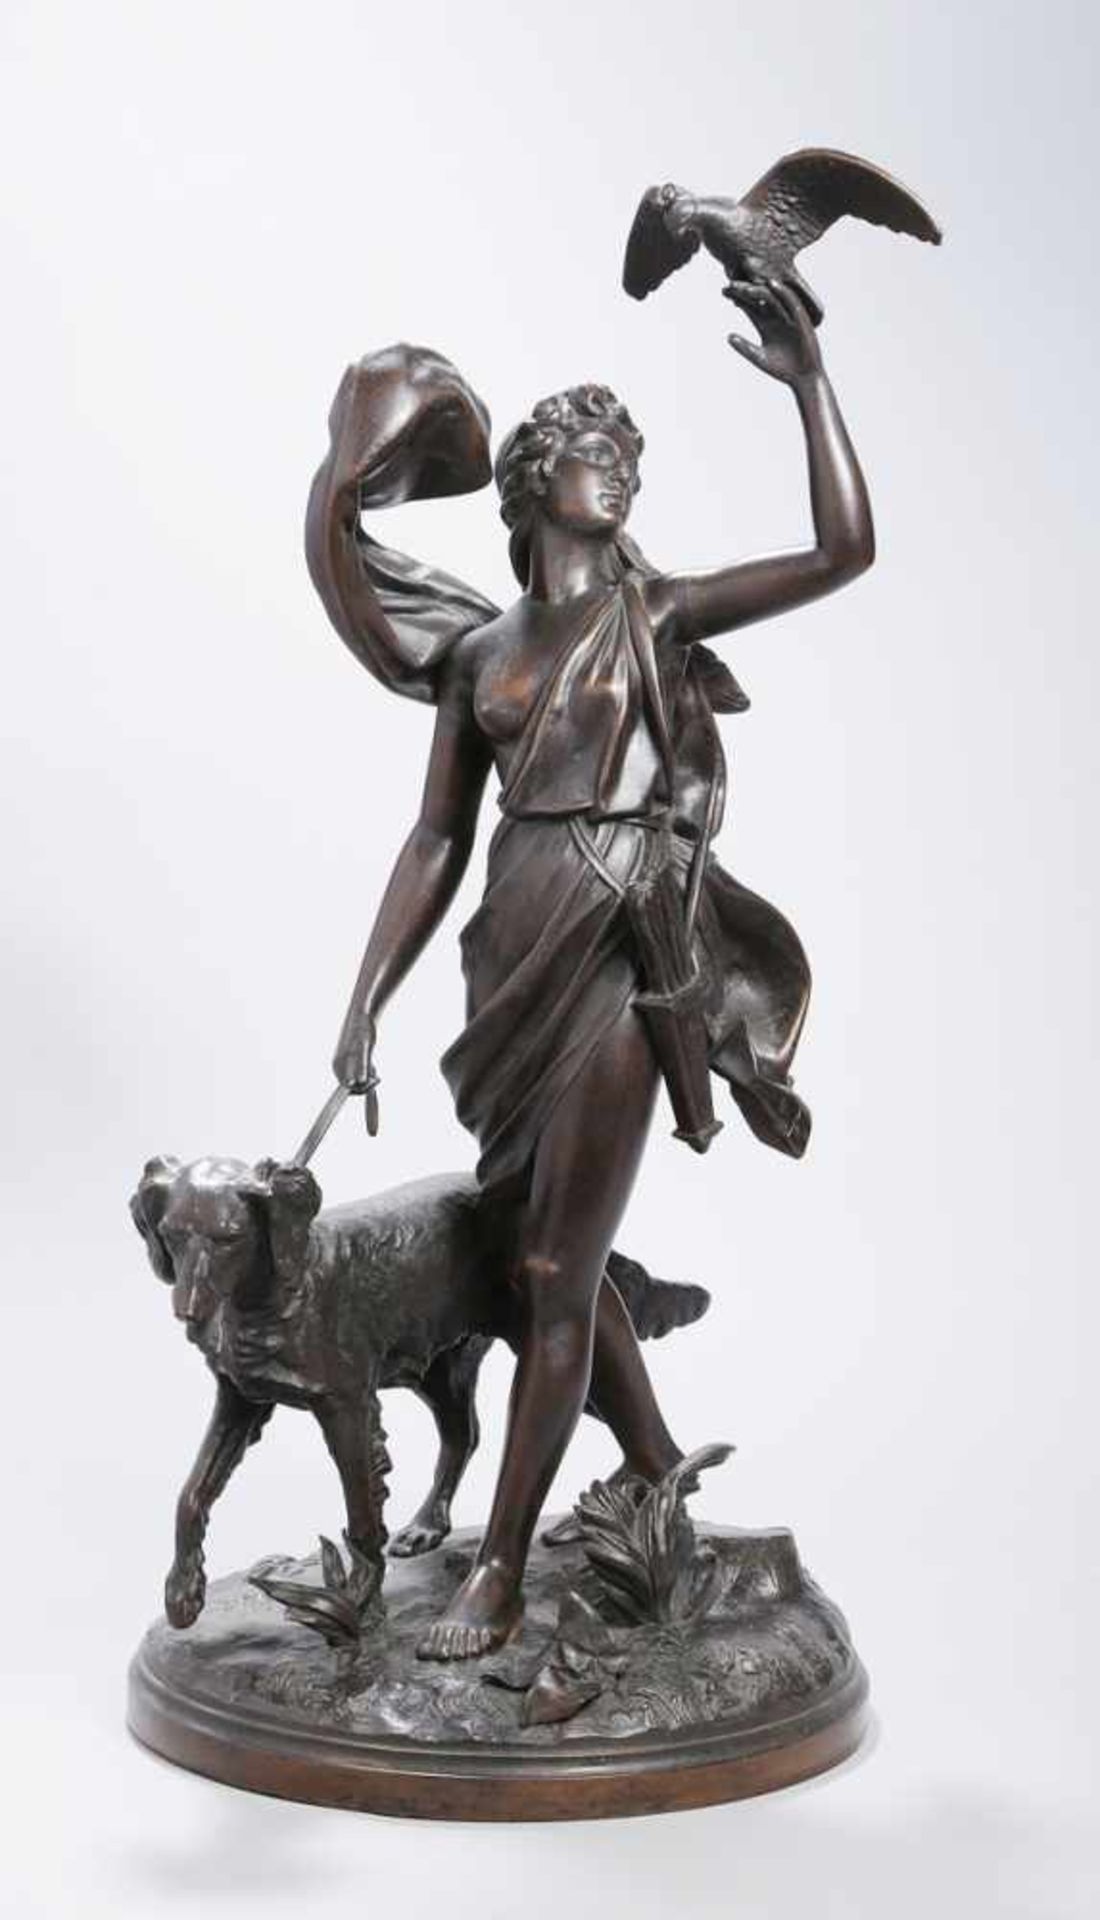 Bronze-Plastik, "Diana mit Jagdhund", unleserlich signierender Bildhauer um 1900,